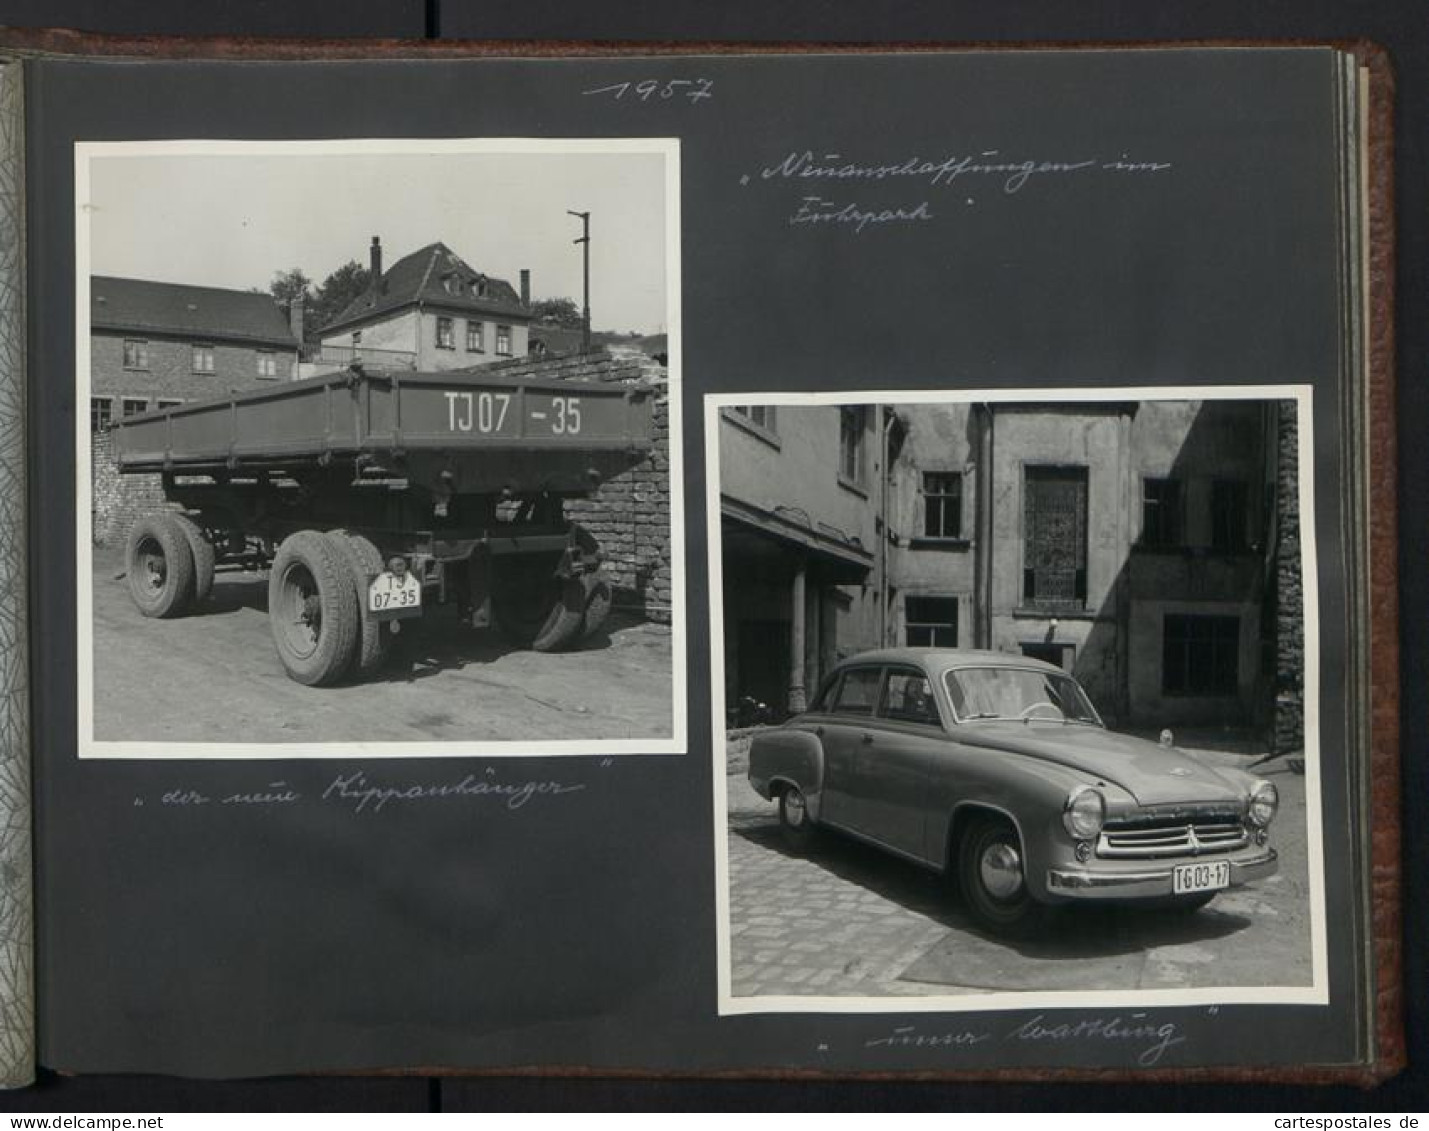 2 Fotoalben mit 89 Fotografien, Ansicht Reichenbach i.Vogtland, VEB Textilveredlungswerk, Werksansicht, 1957 